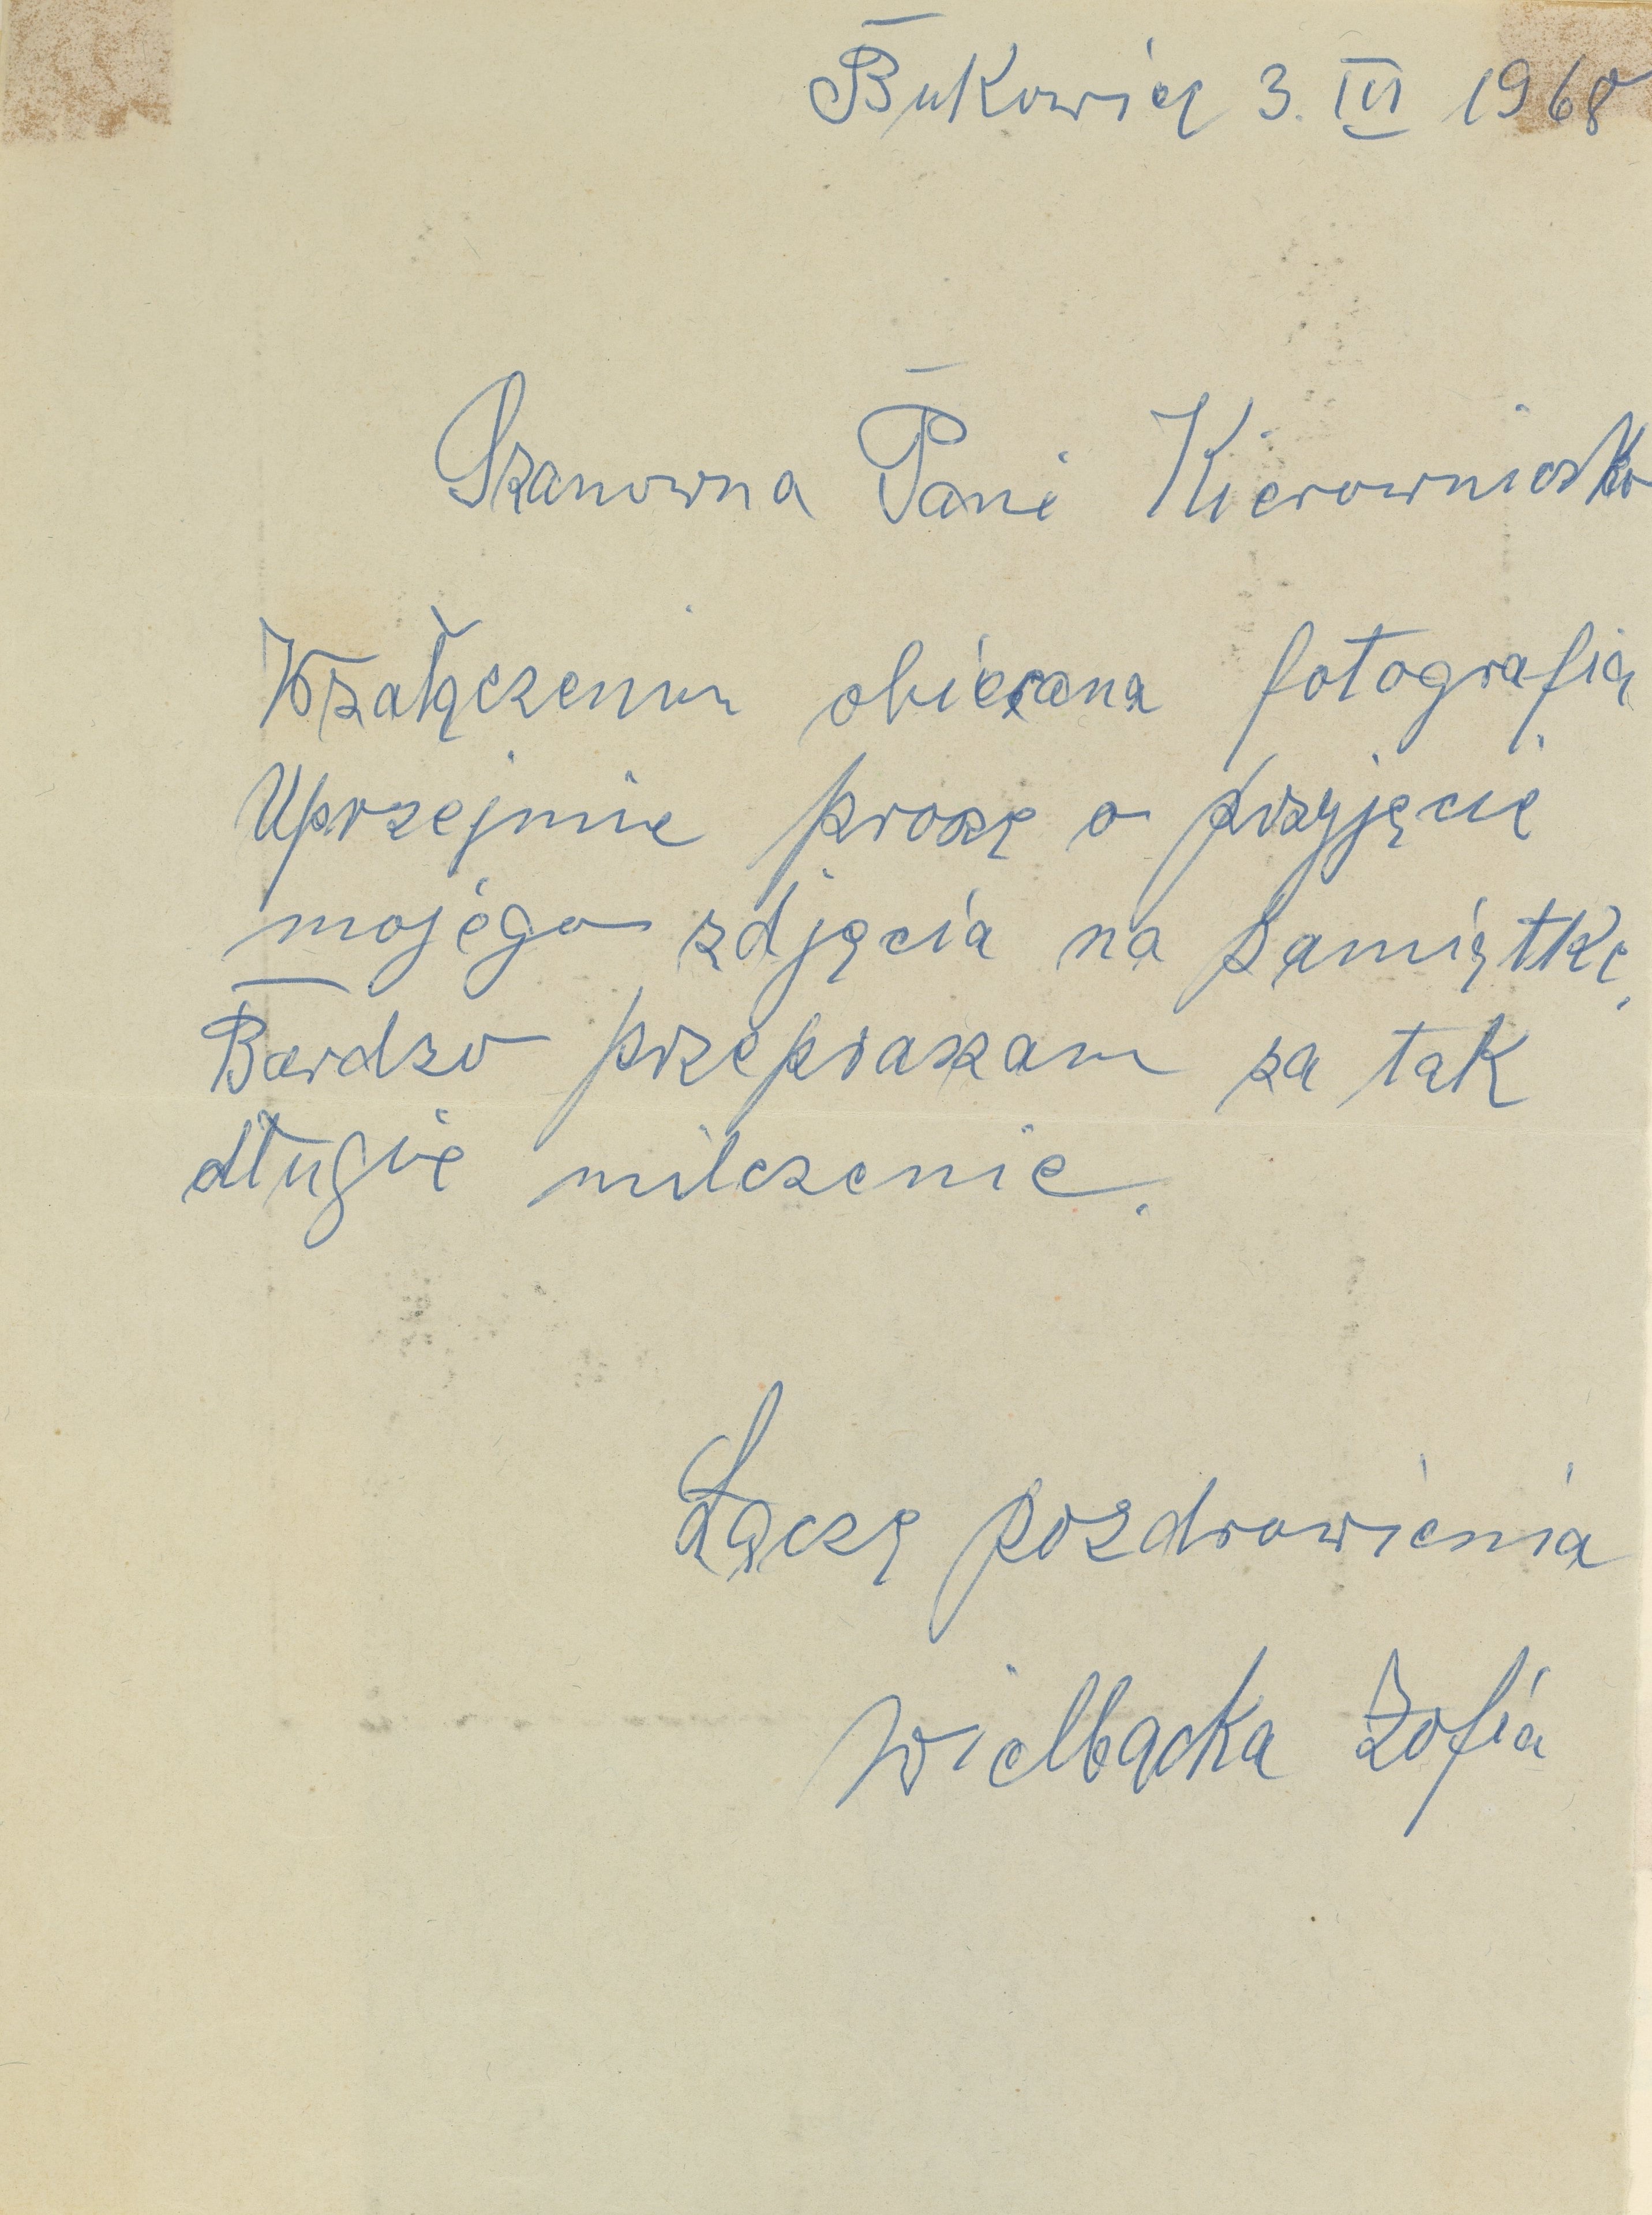 List do rumskiej biblioteki od Zofii Wielbackiej – wnuczki Floriana Ceynowy, ze zbiorów MBP Rumia